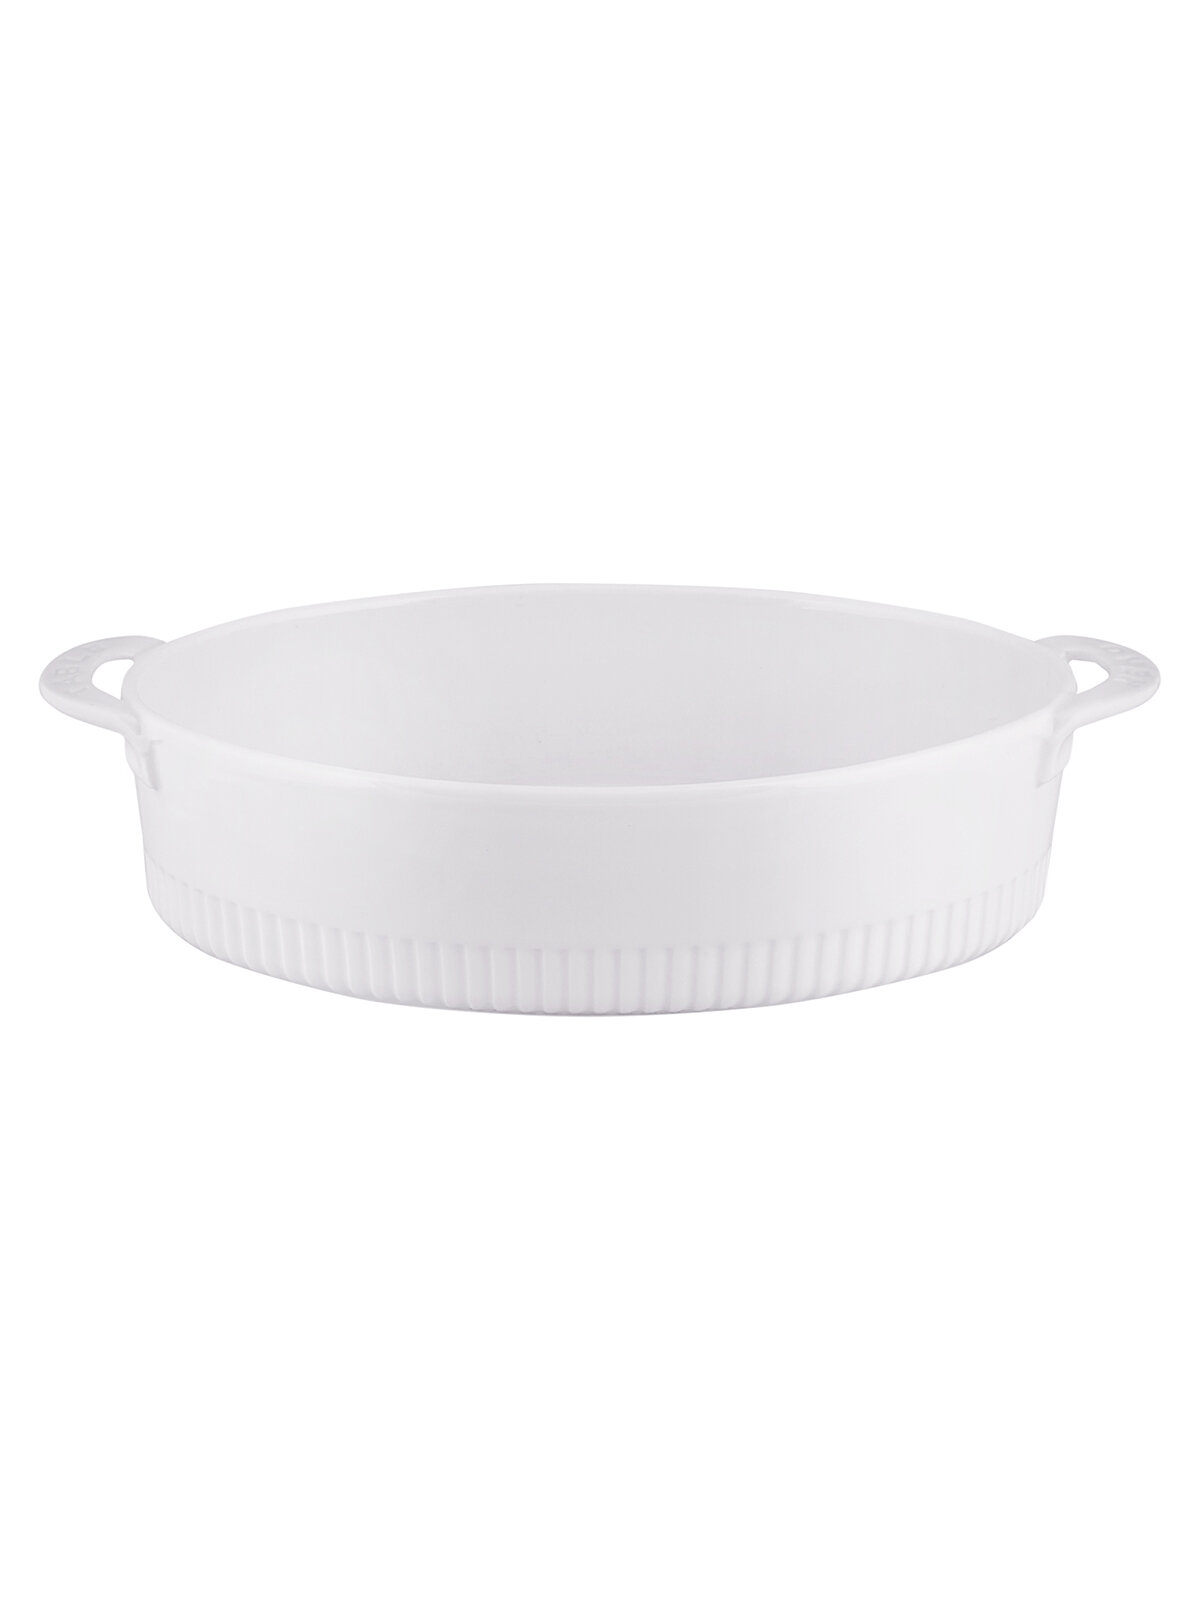 Форма для запекания Appetite белый керамическая, 33x20x6 см